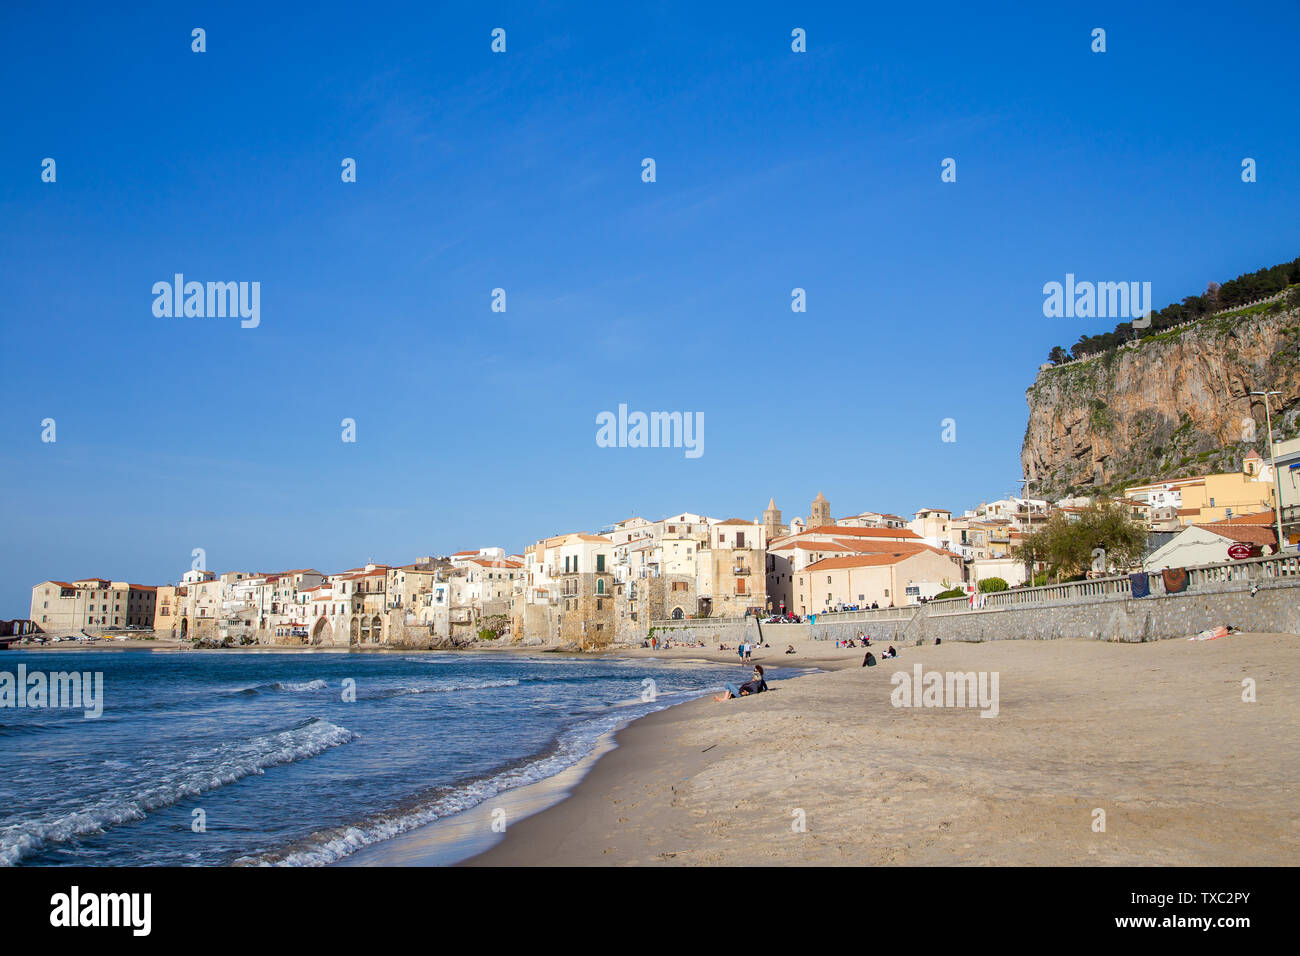 Céfalu, Sicile, Italie - 16 mars 2018 : une journée ensoleillée à la plage de Céfalu, avec peu de gens et méconnaissable vieux bâtiments typiques Banque D'Images